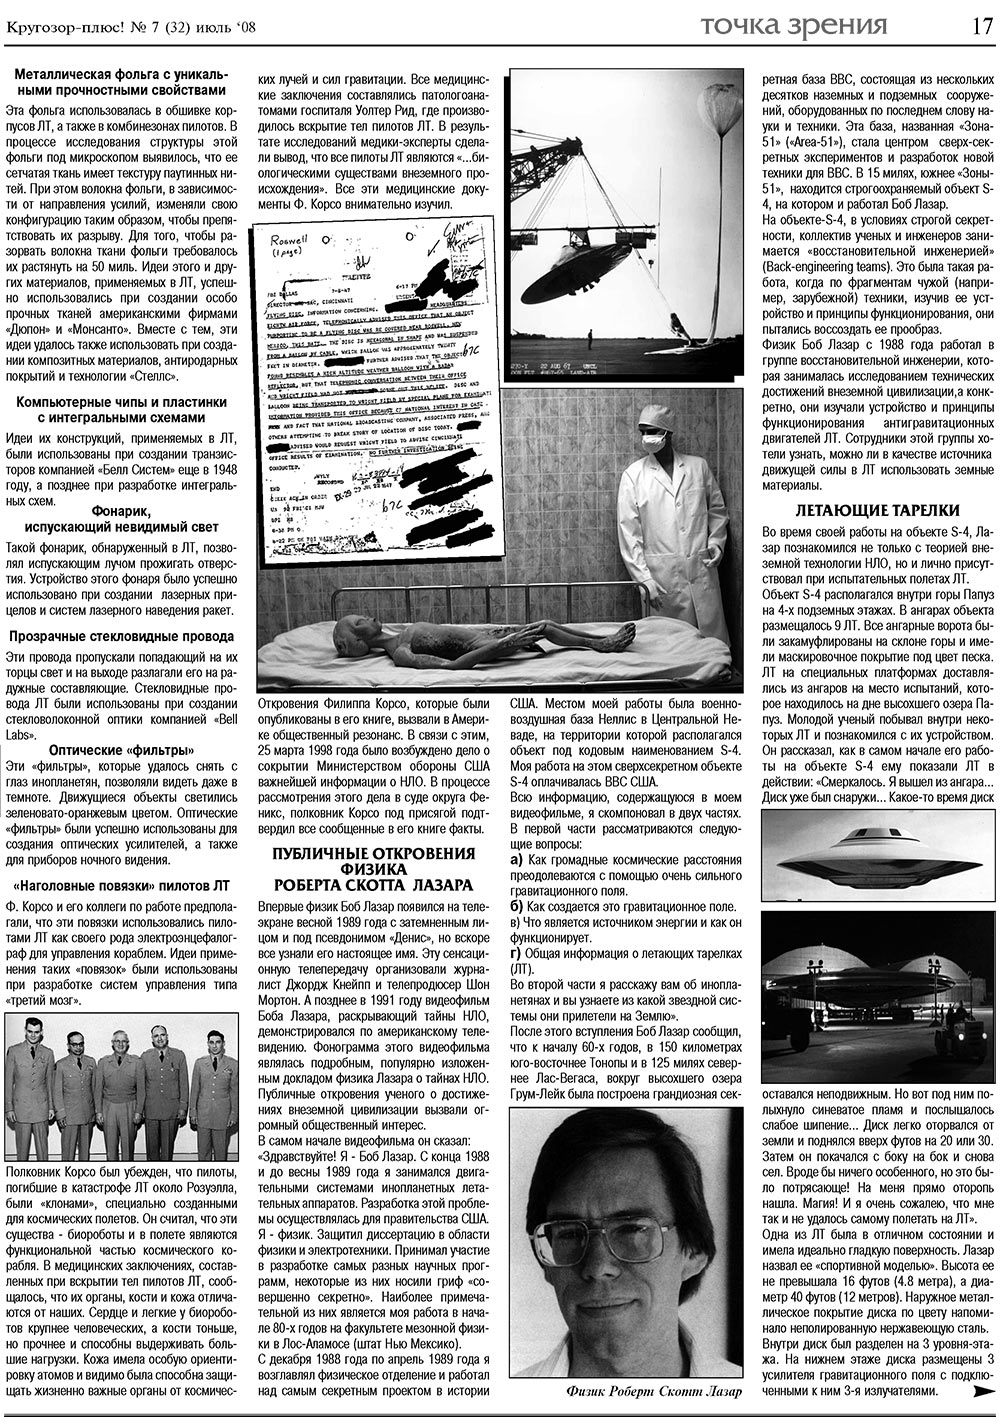 Кругозор плюс!, газета. 2008 №7 стр.17